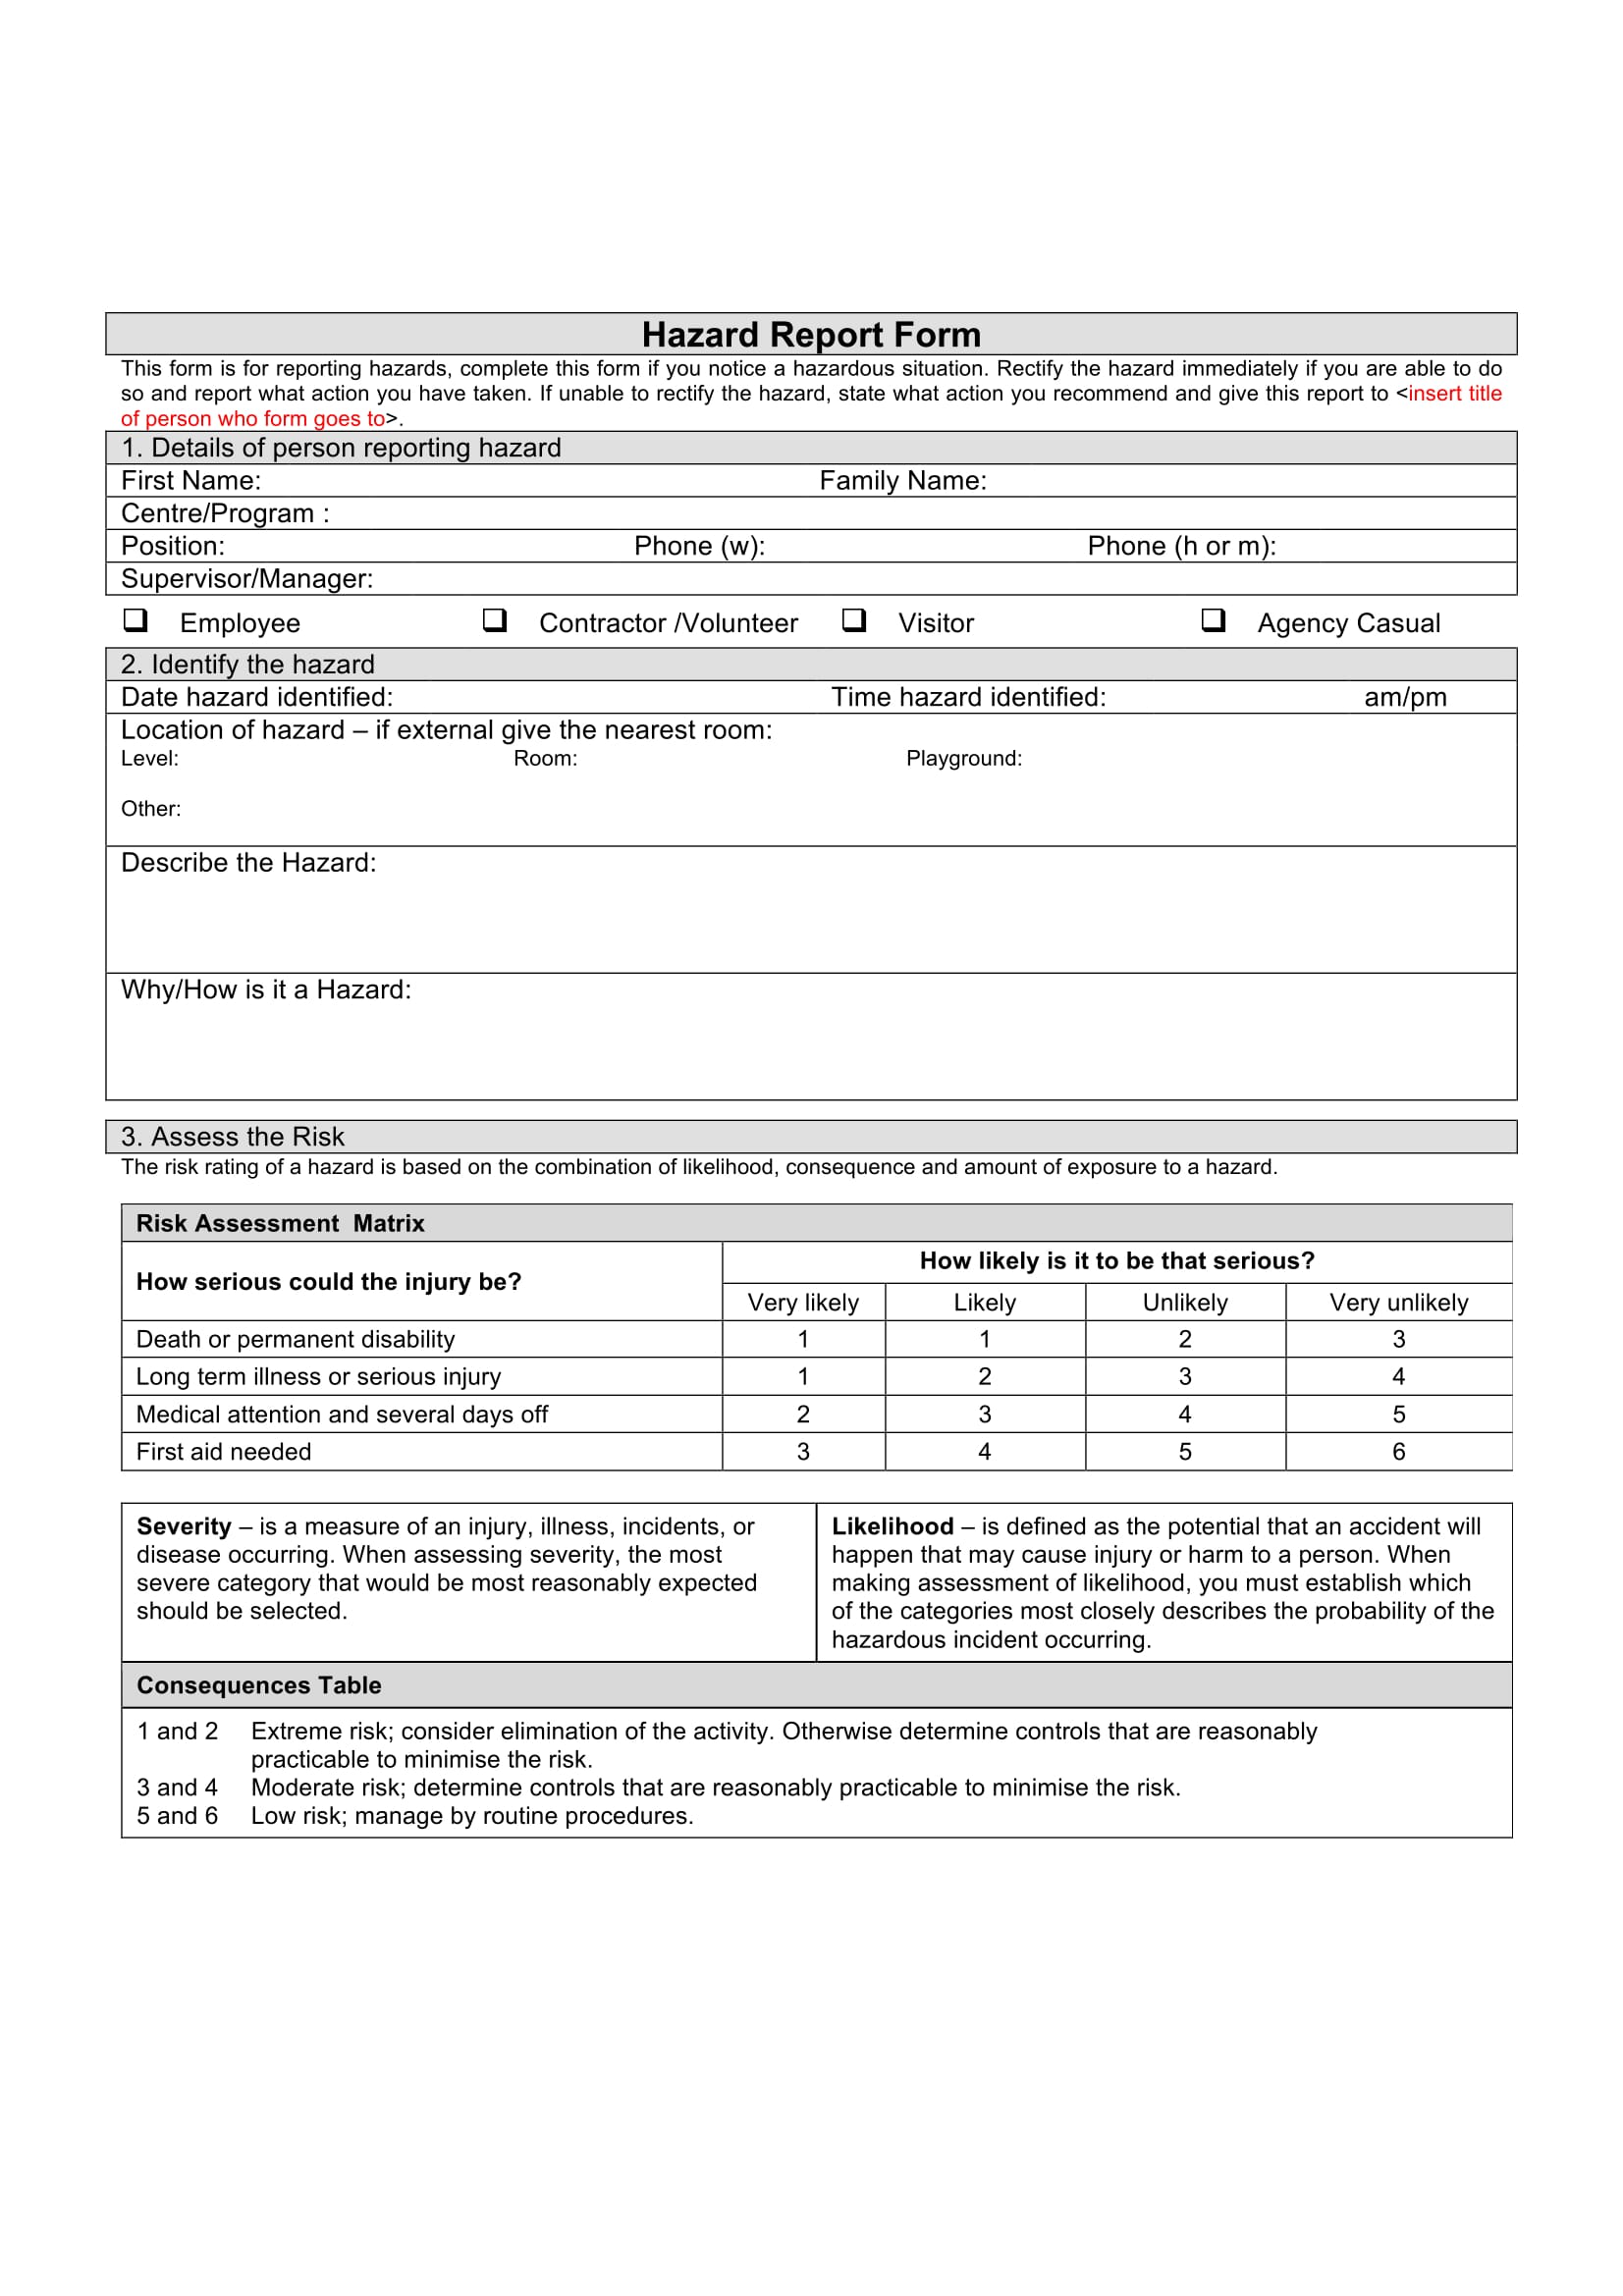 hazard report form sample 1